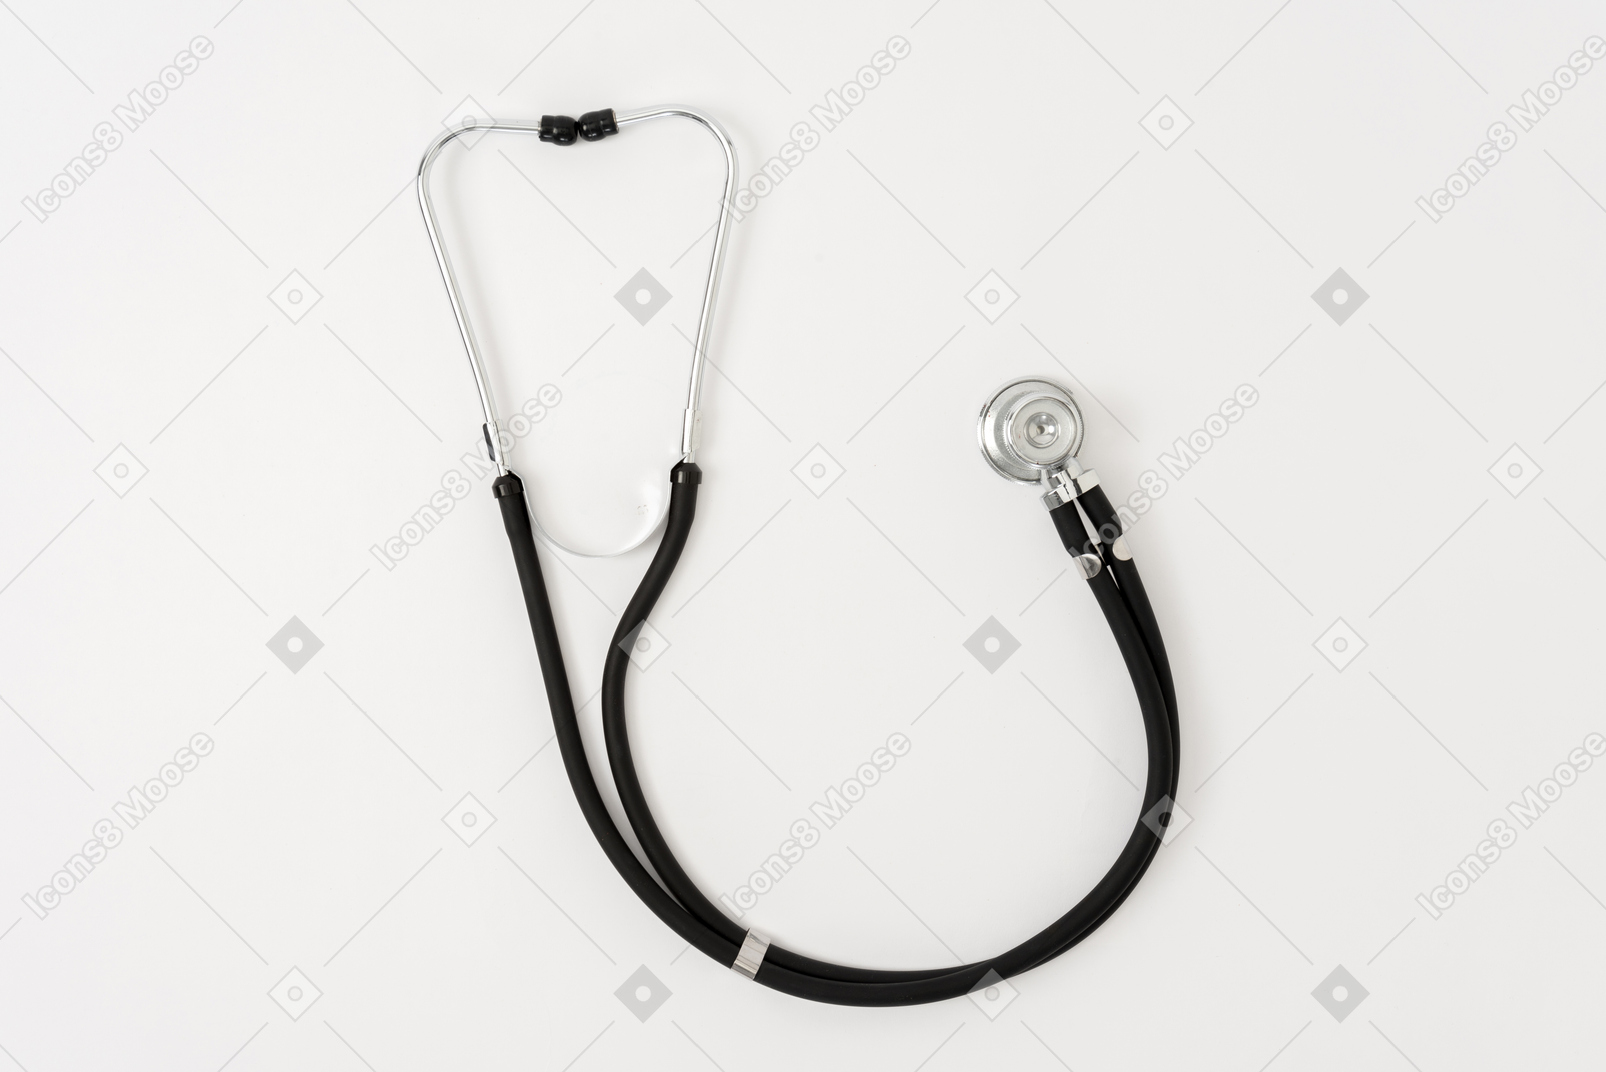 Stethoscope on white background